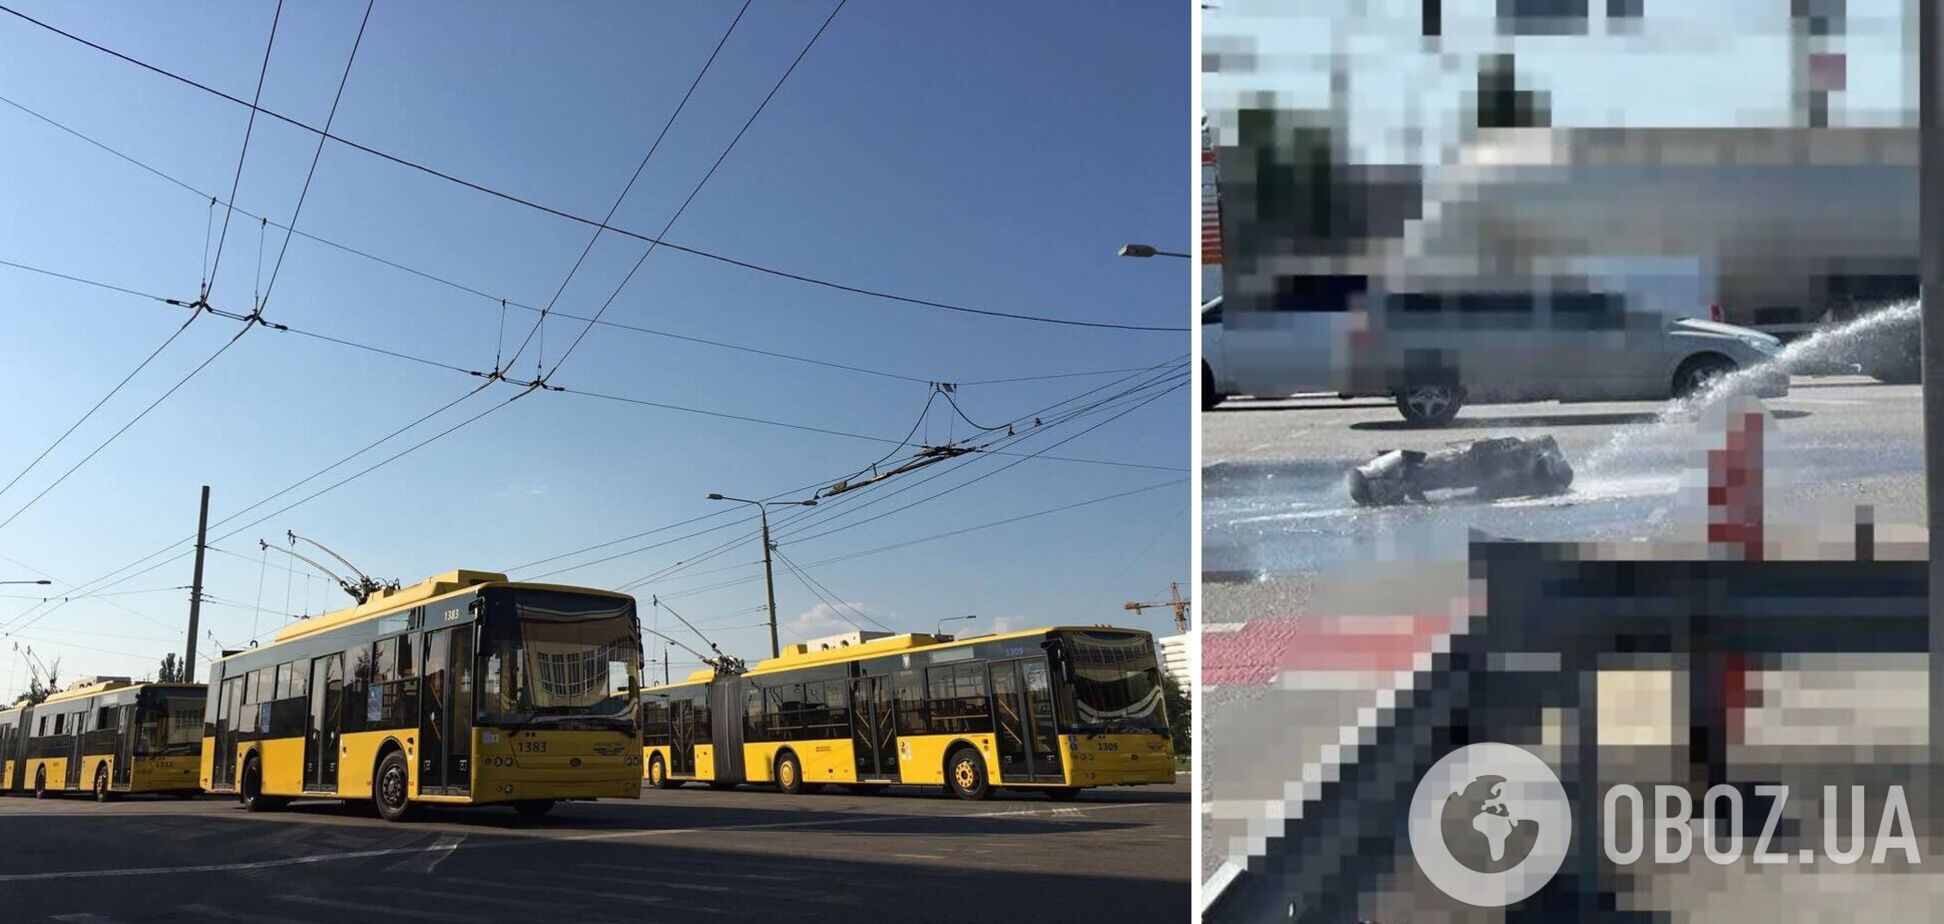 Движение нескольких троллейбусных маршрутов столицы задерживается